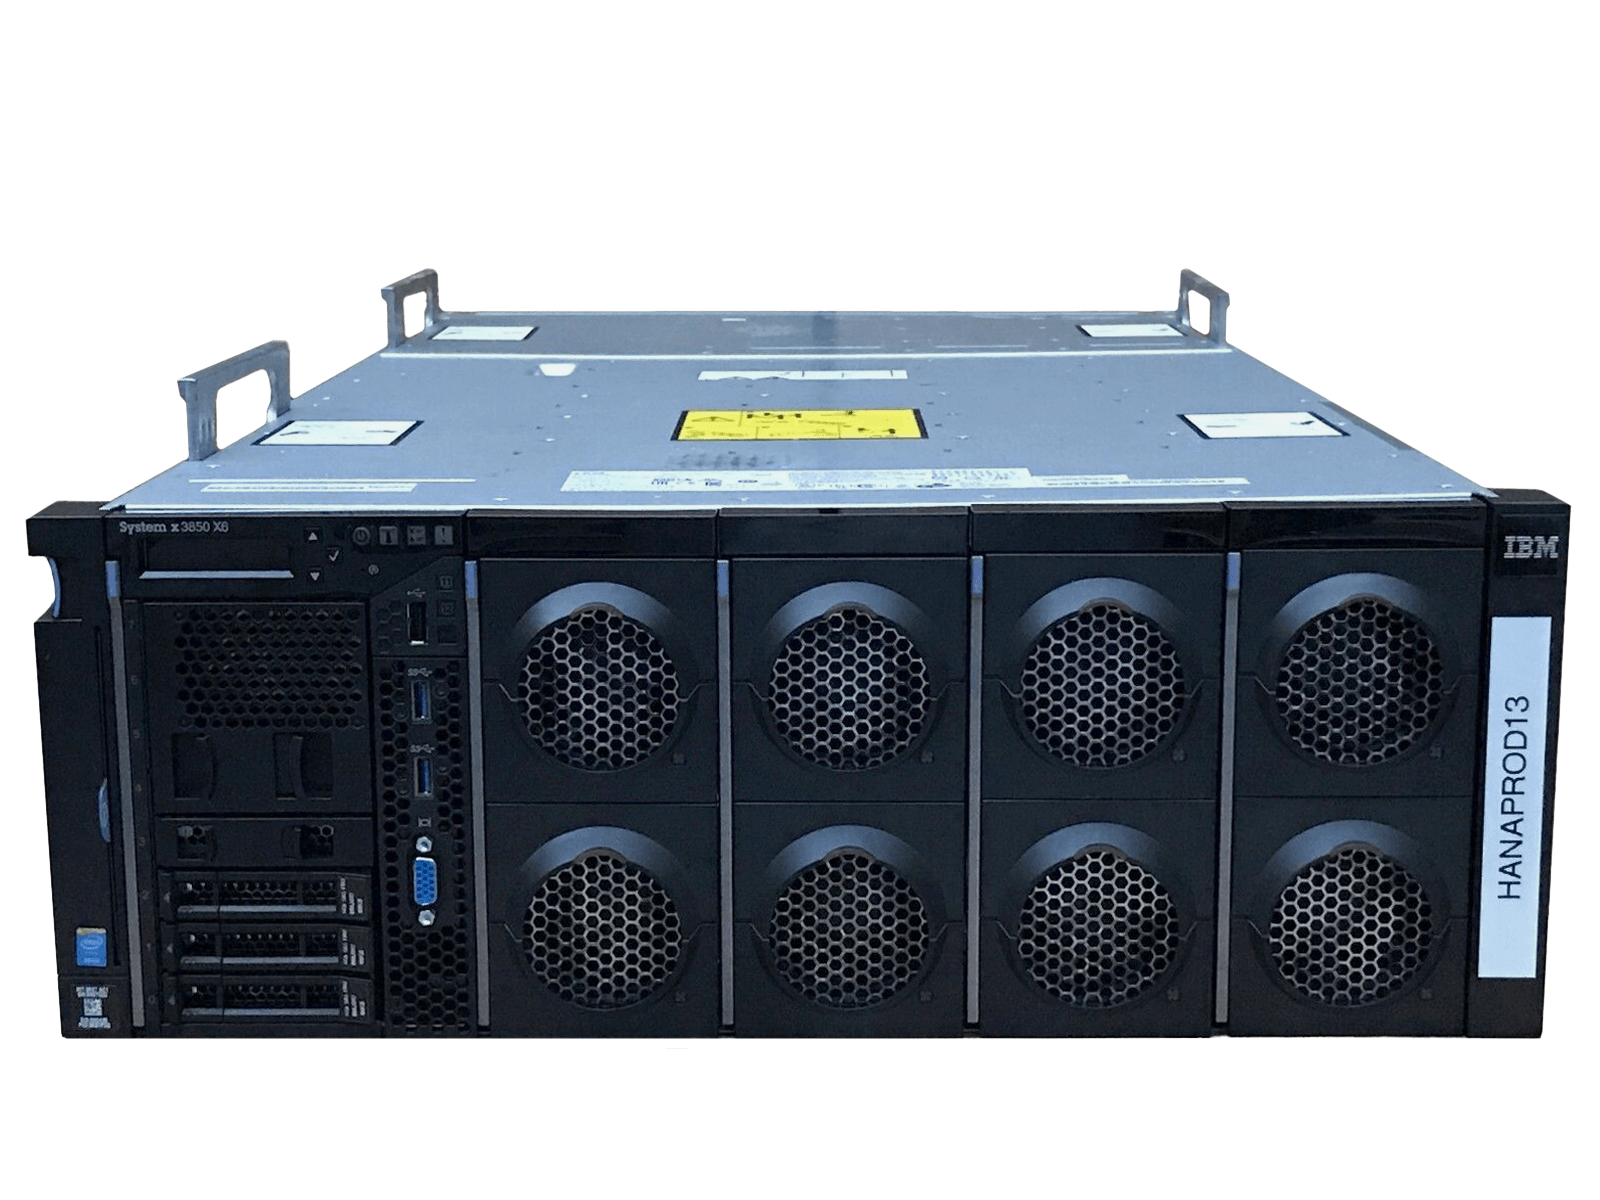 IBM x3850 X6 Server 4x Xeon E7-4850 v4 1536GB DDR4 RAM 2x 300GB 10K 4x 1400W PSU